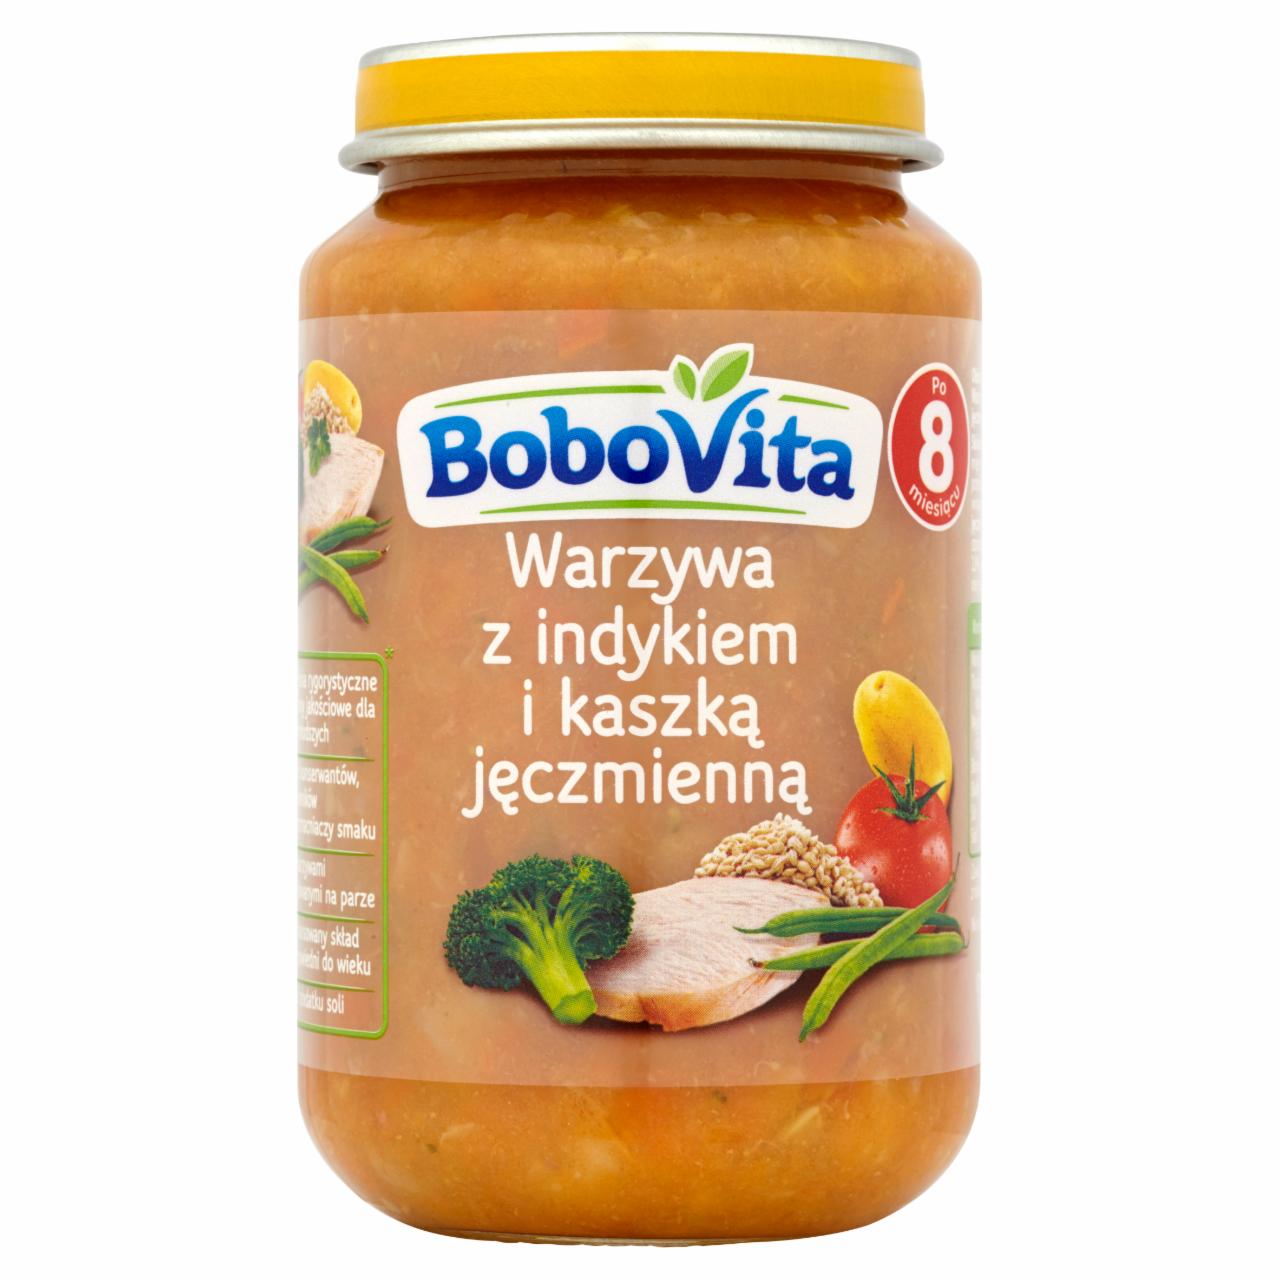 Zdjęcia - BoboVita Warzywa z indykiem i kaszką jęczmienną po 8 miesiącu 190 g